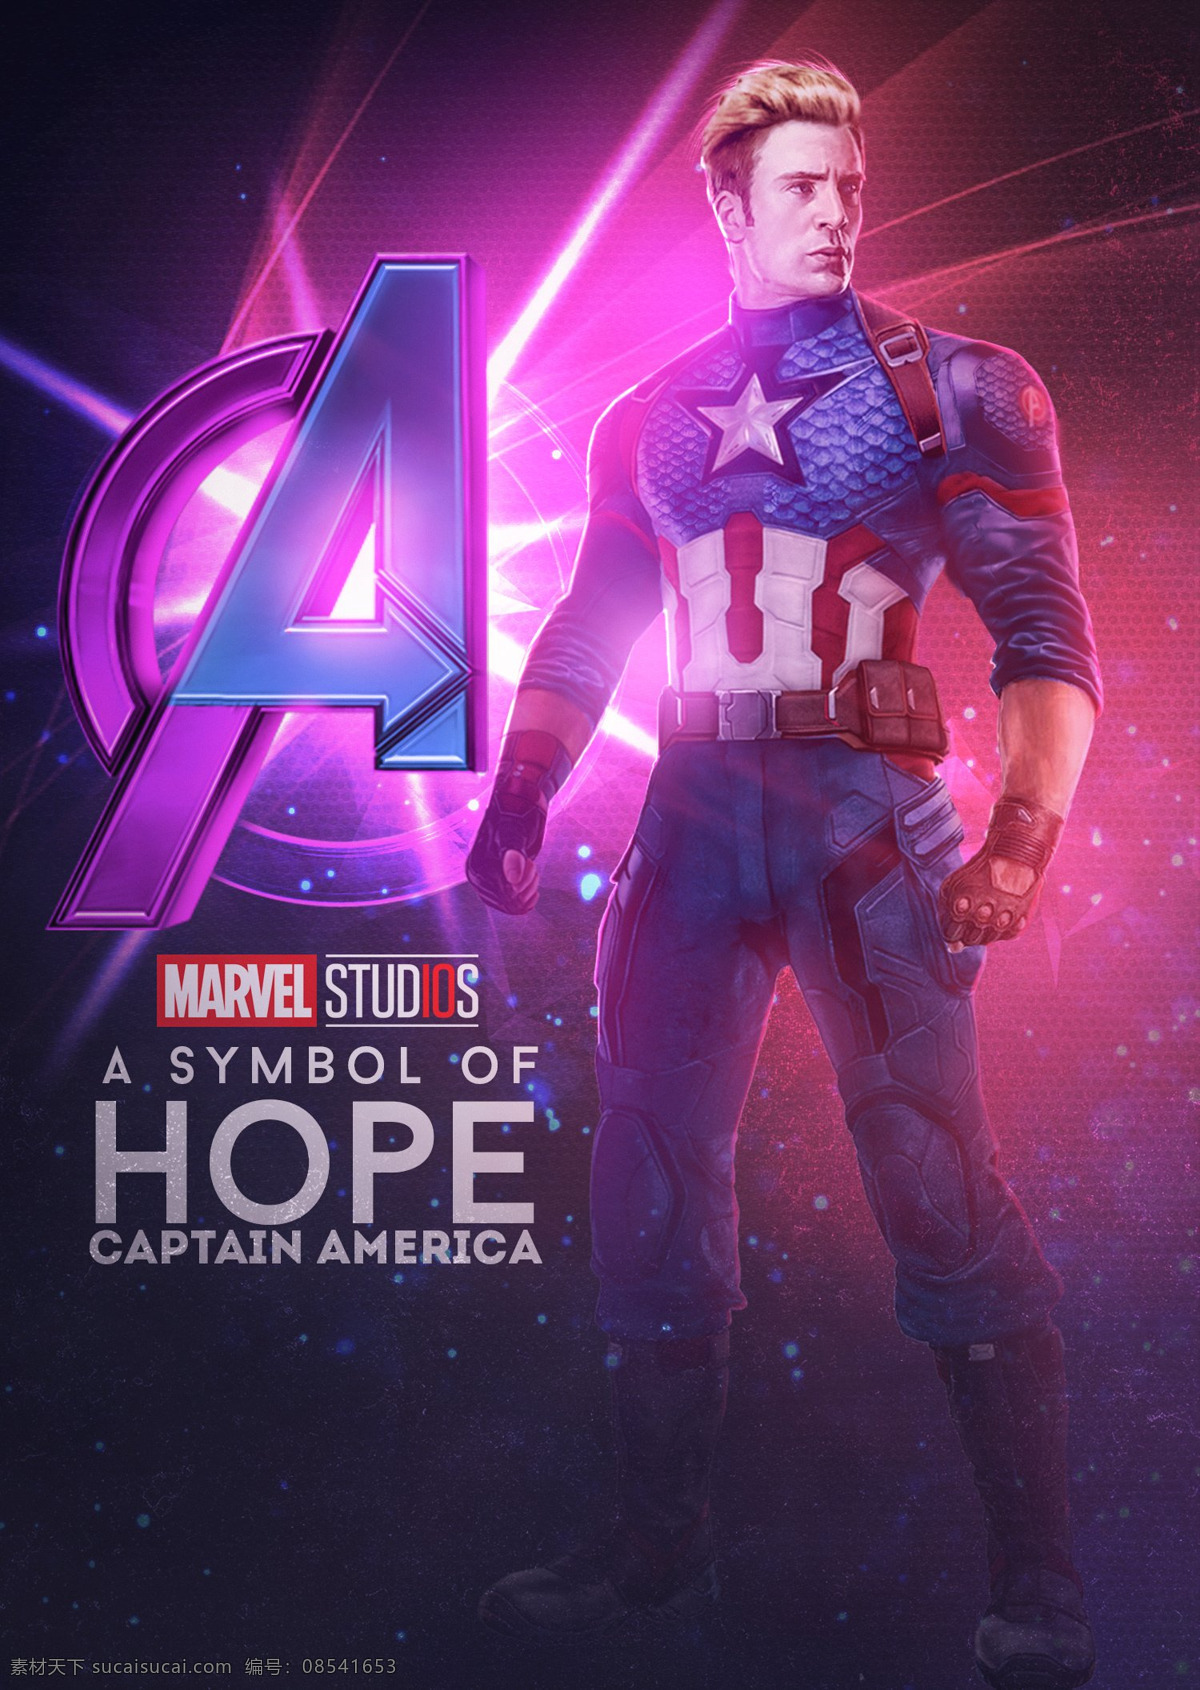 复仇者联盟4 美国队长 漫威 超级英雄 复仇者联盟 科幻 电影 海报 漫威电影海报 文化艺术 影视娱乐